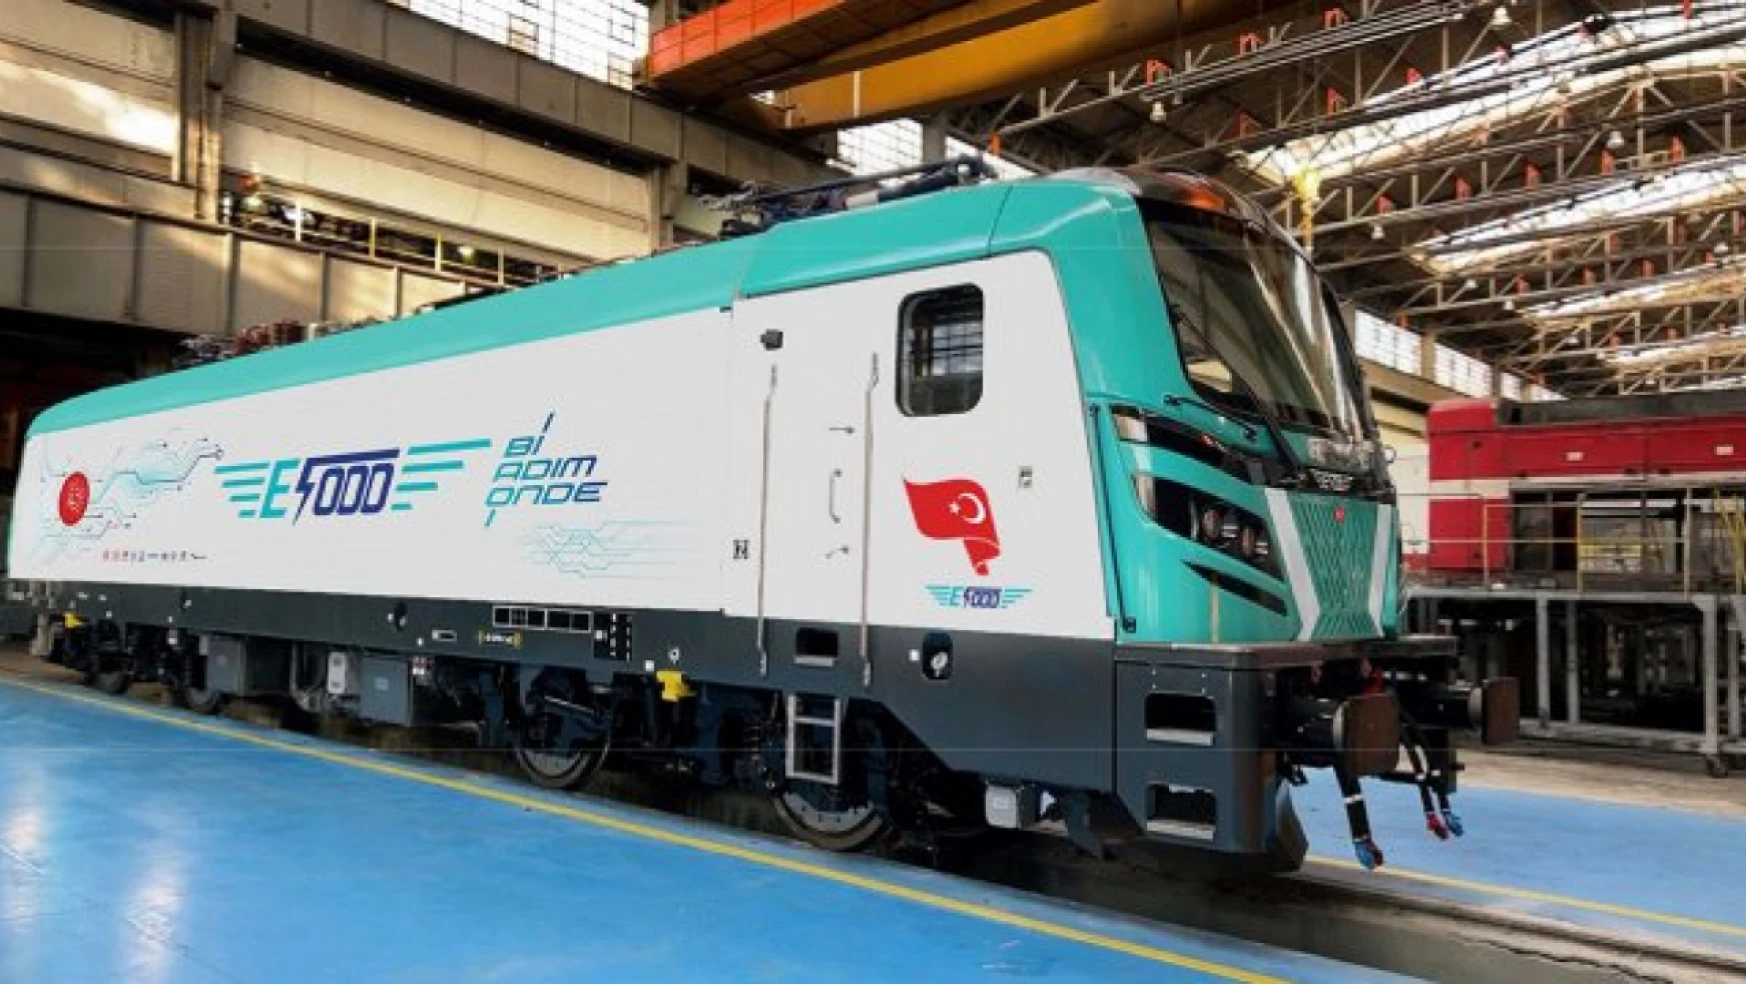 Türkiye'nin ilk yerli ve milli elektrikli anahat lokomotifi E5000 raylara indi.